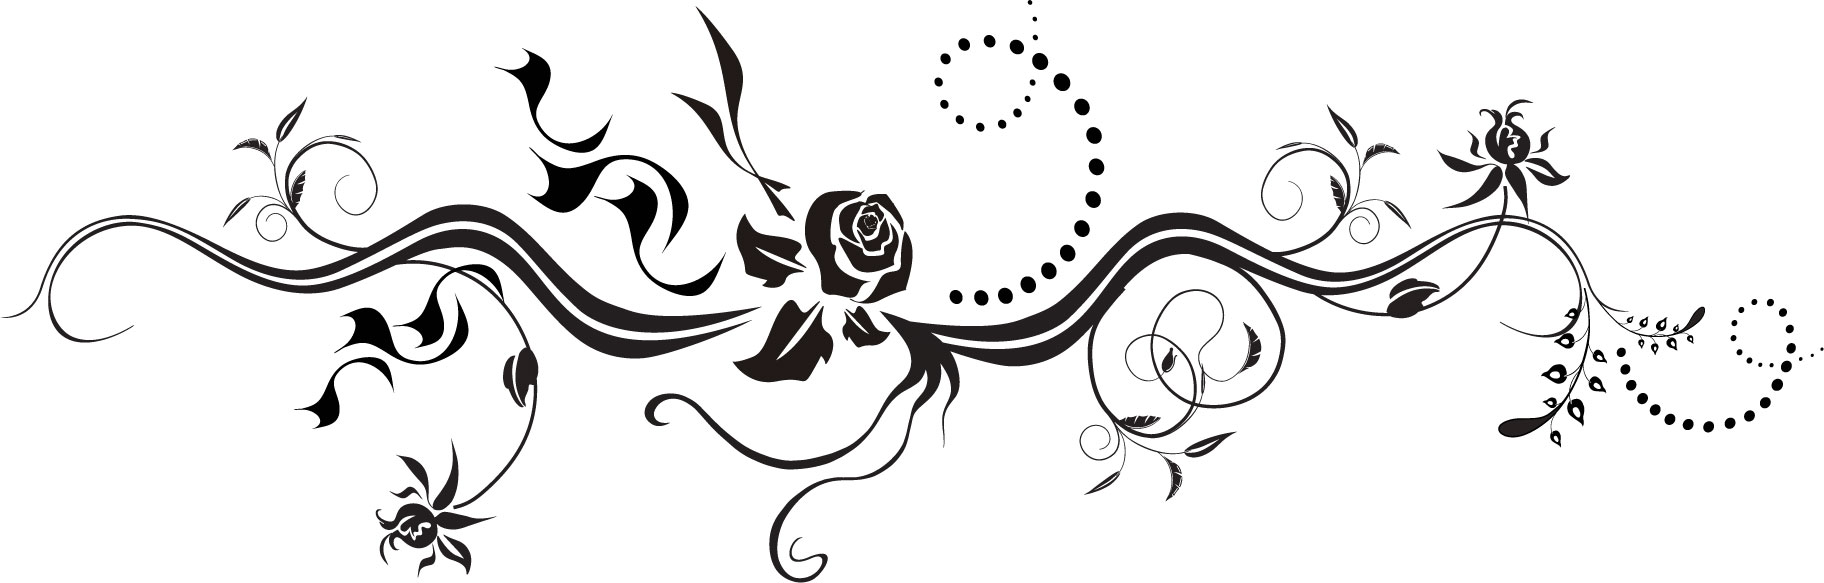 花のイラスト フリー素材 白黒 モノクロno 324 白黒 バラ 茎葉